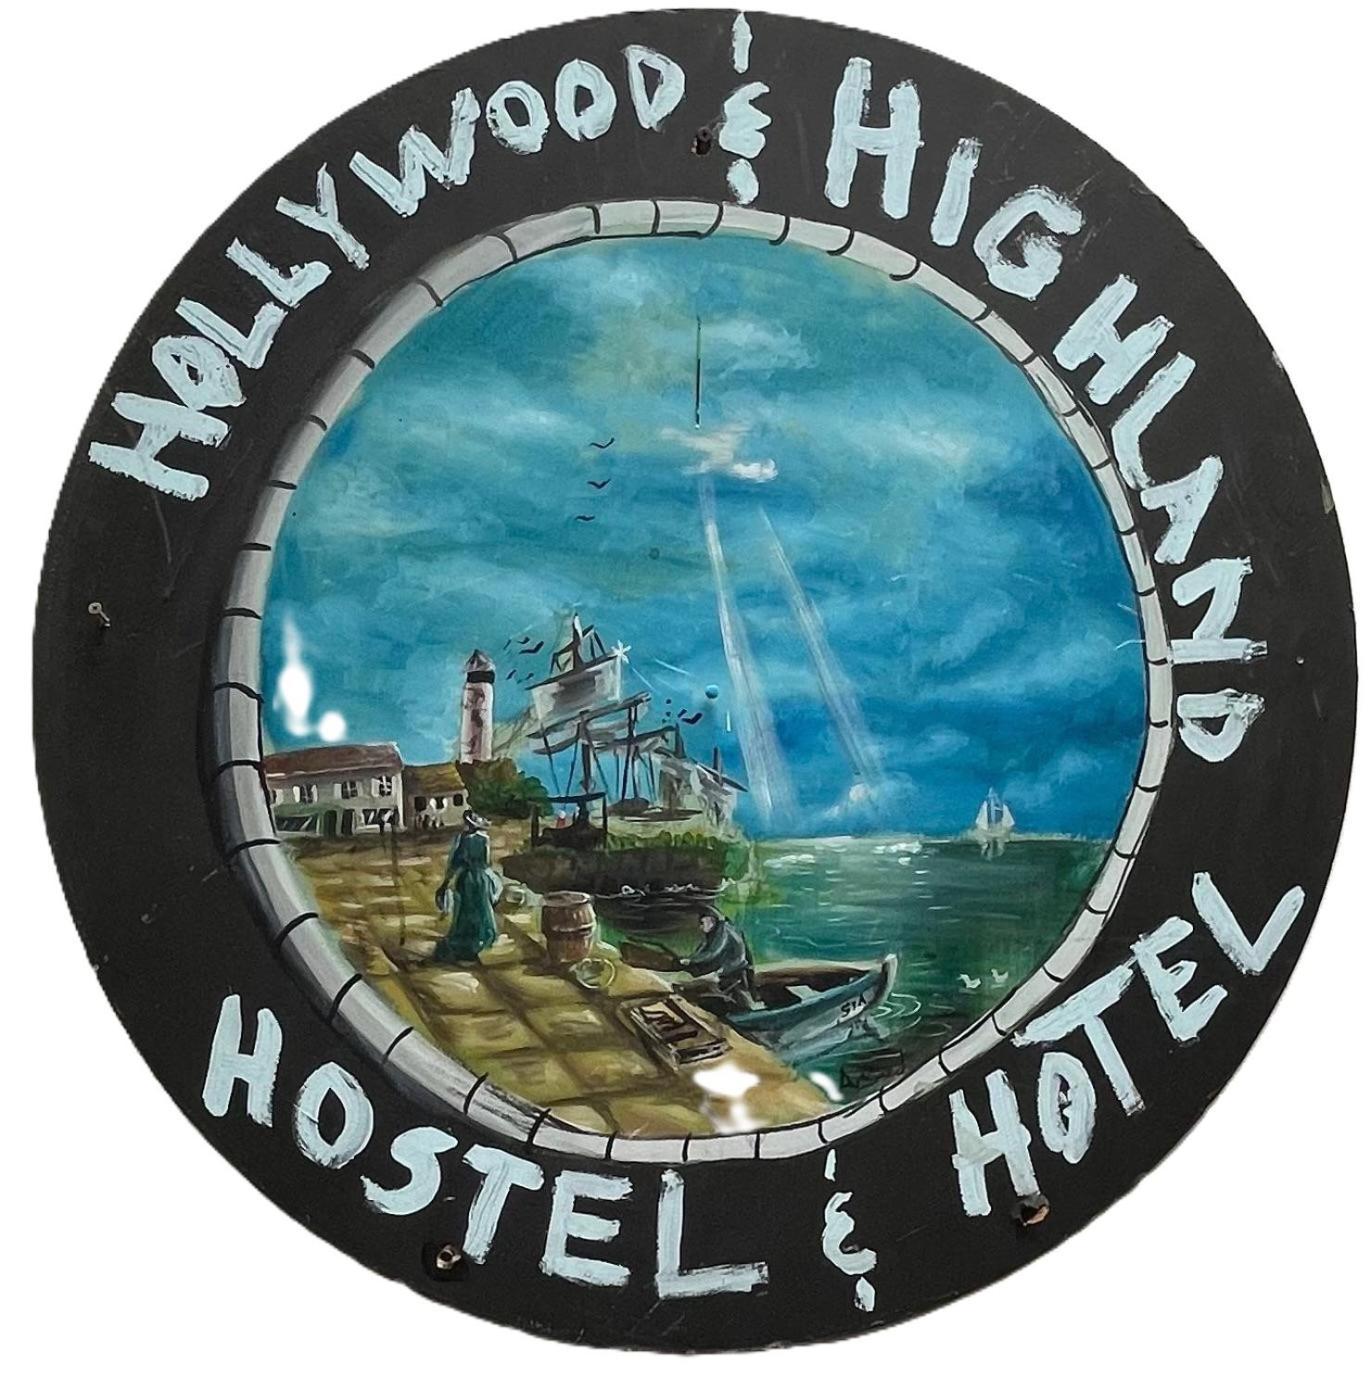 好莱坞高地酒店和旅馆 洛杉矶 外观 照片